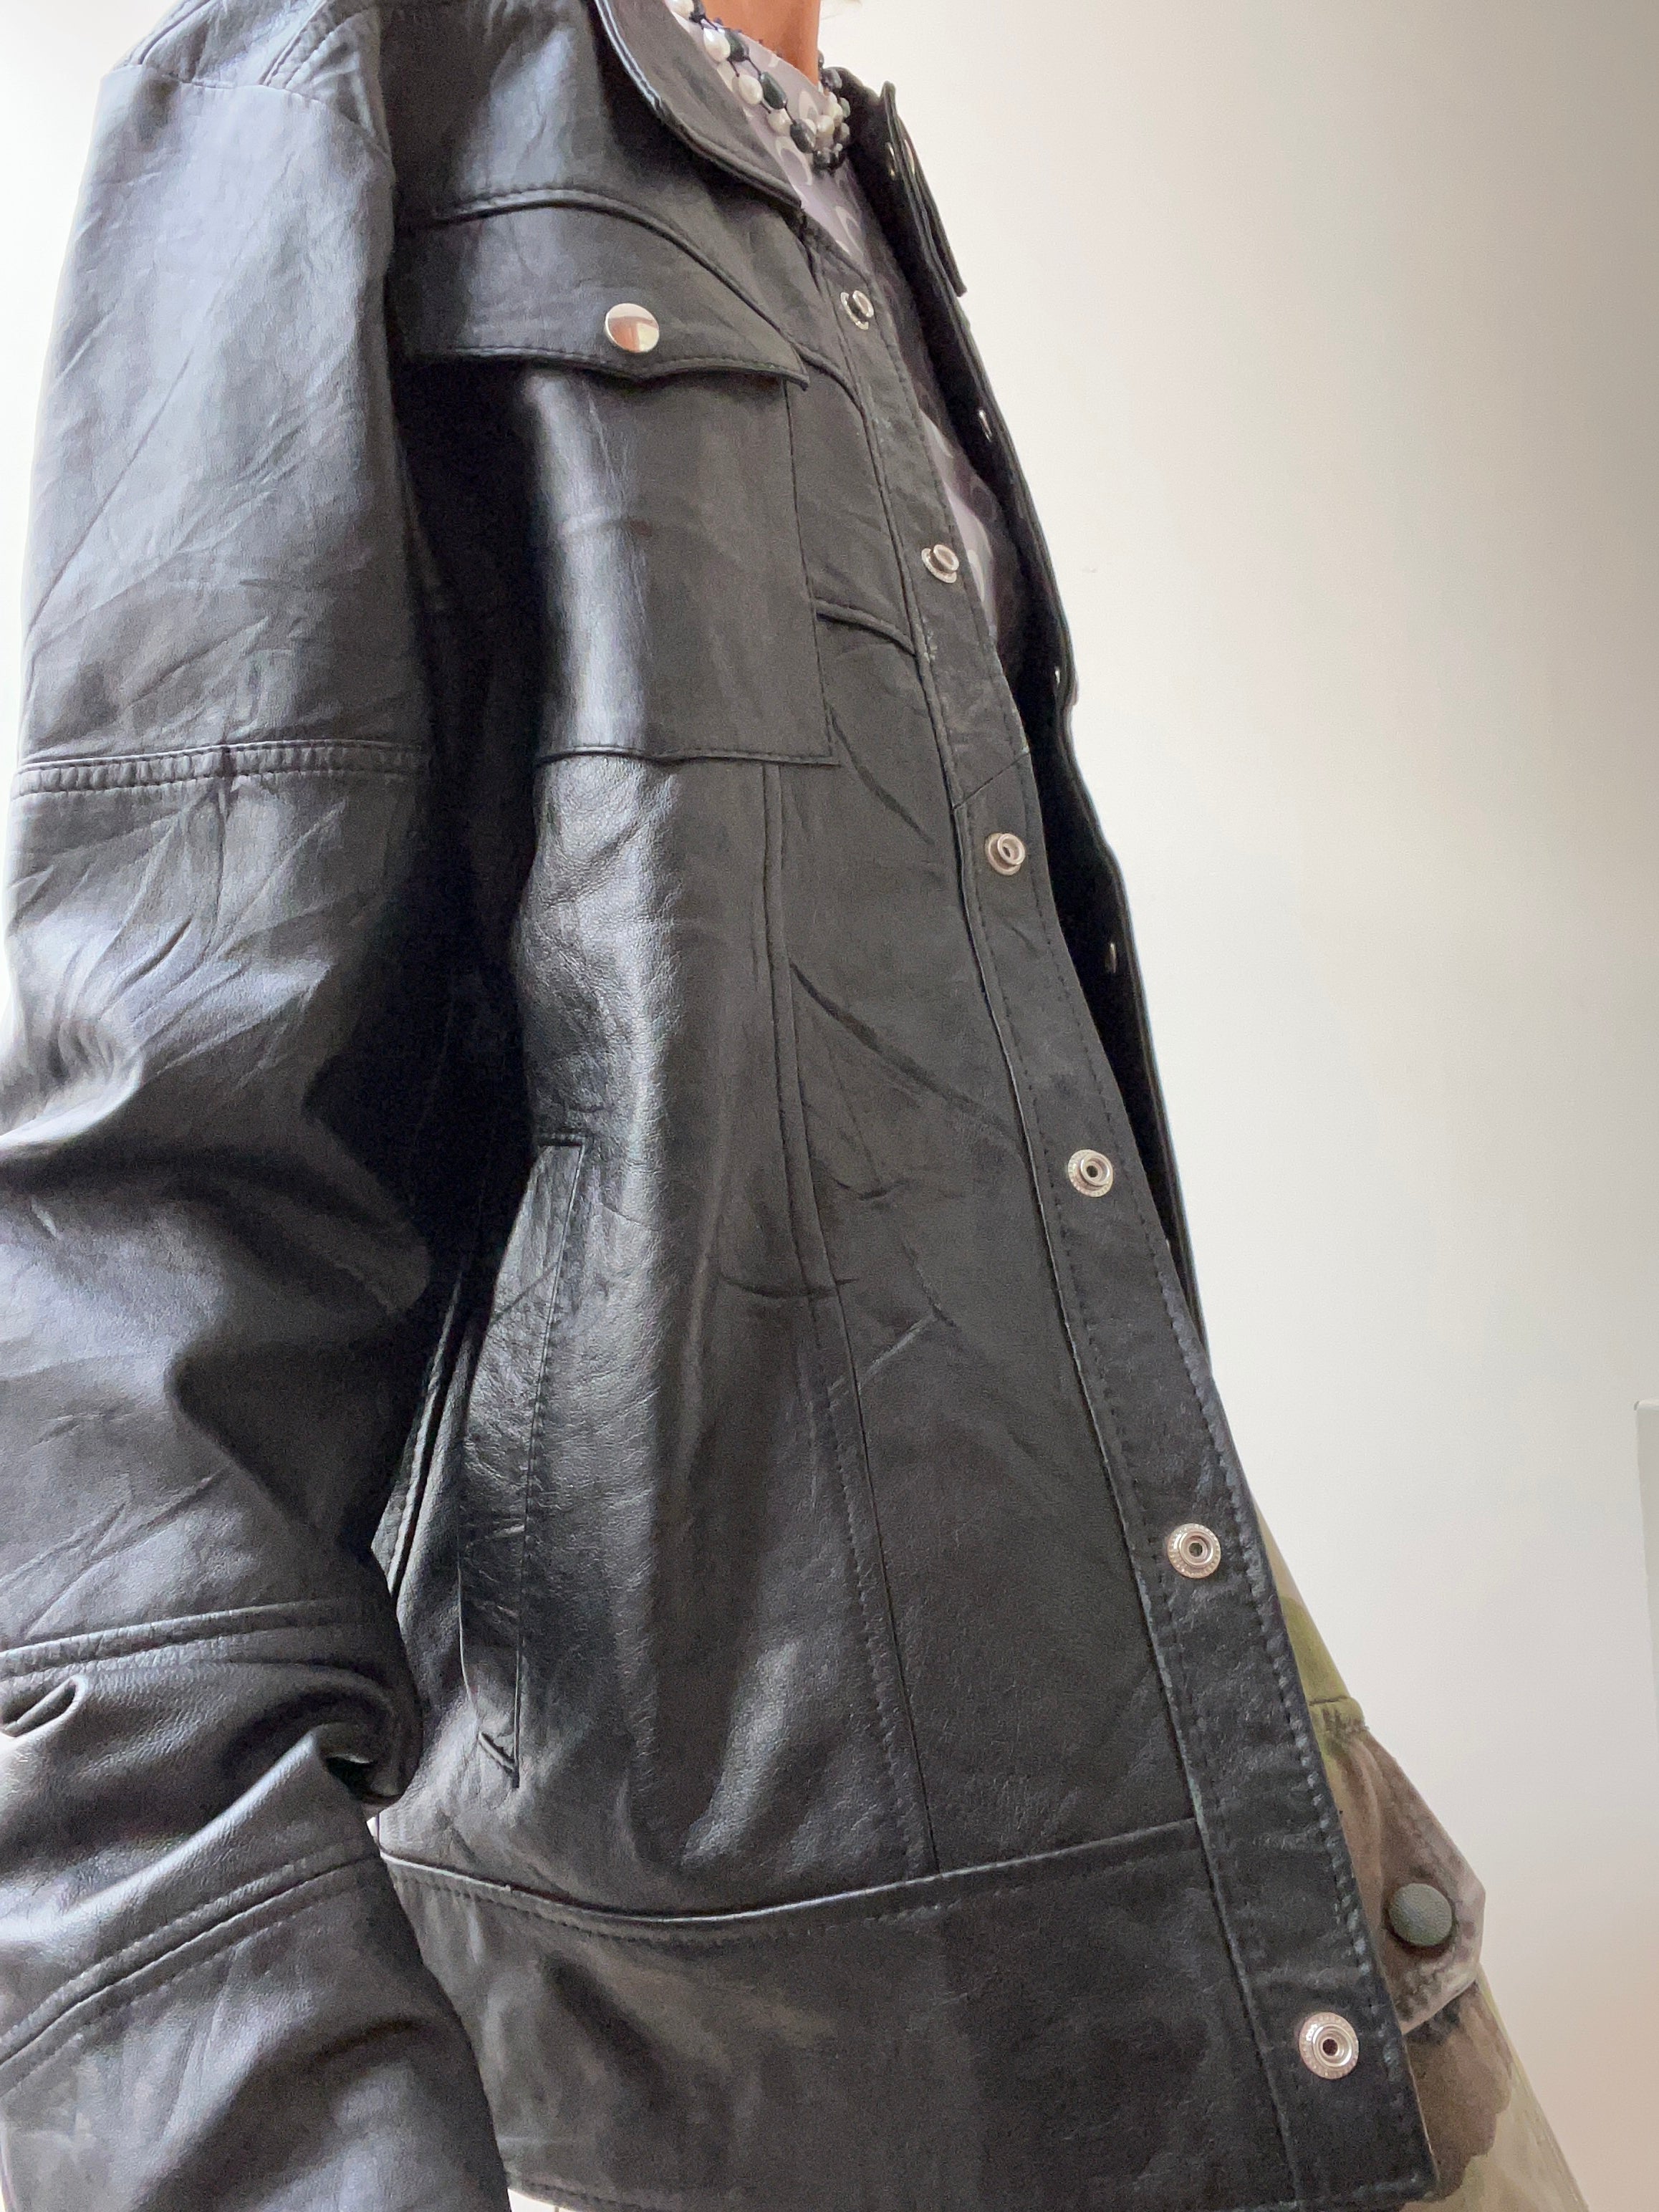 Not specified Jackets Large-XLarge Vintage Black Leather Shirt Jacket